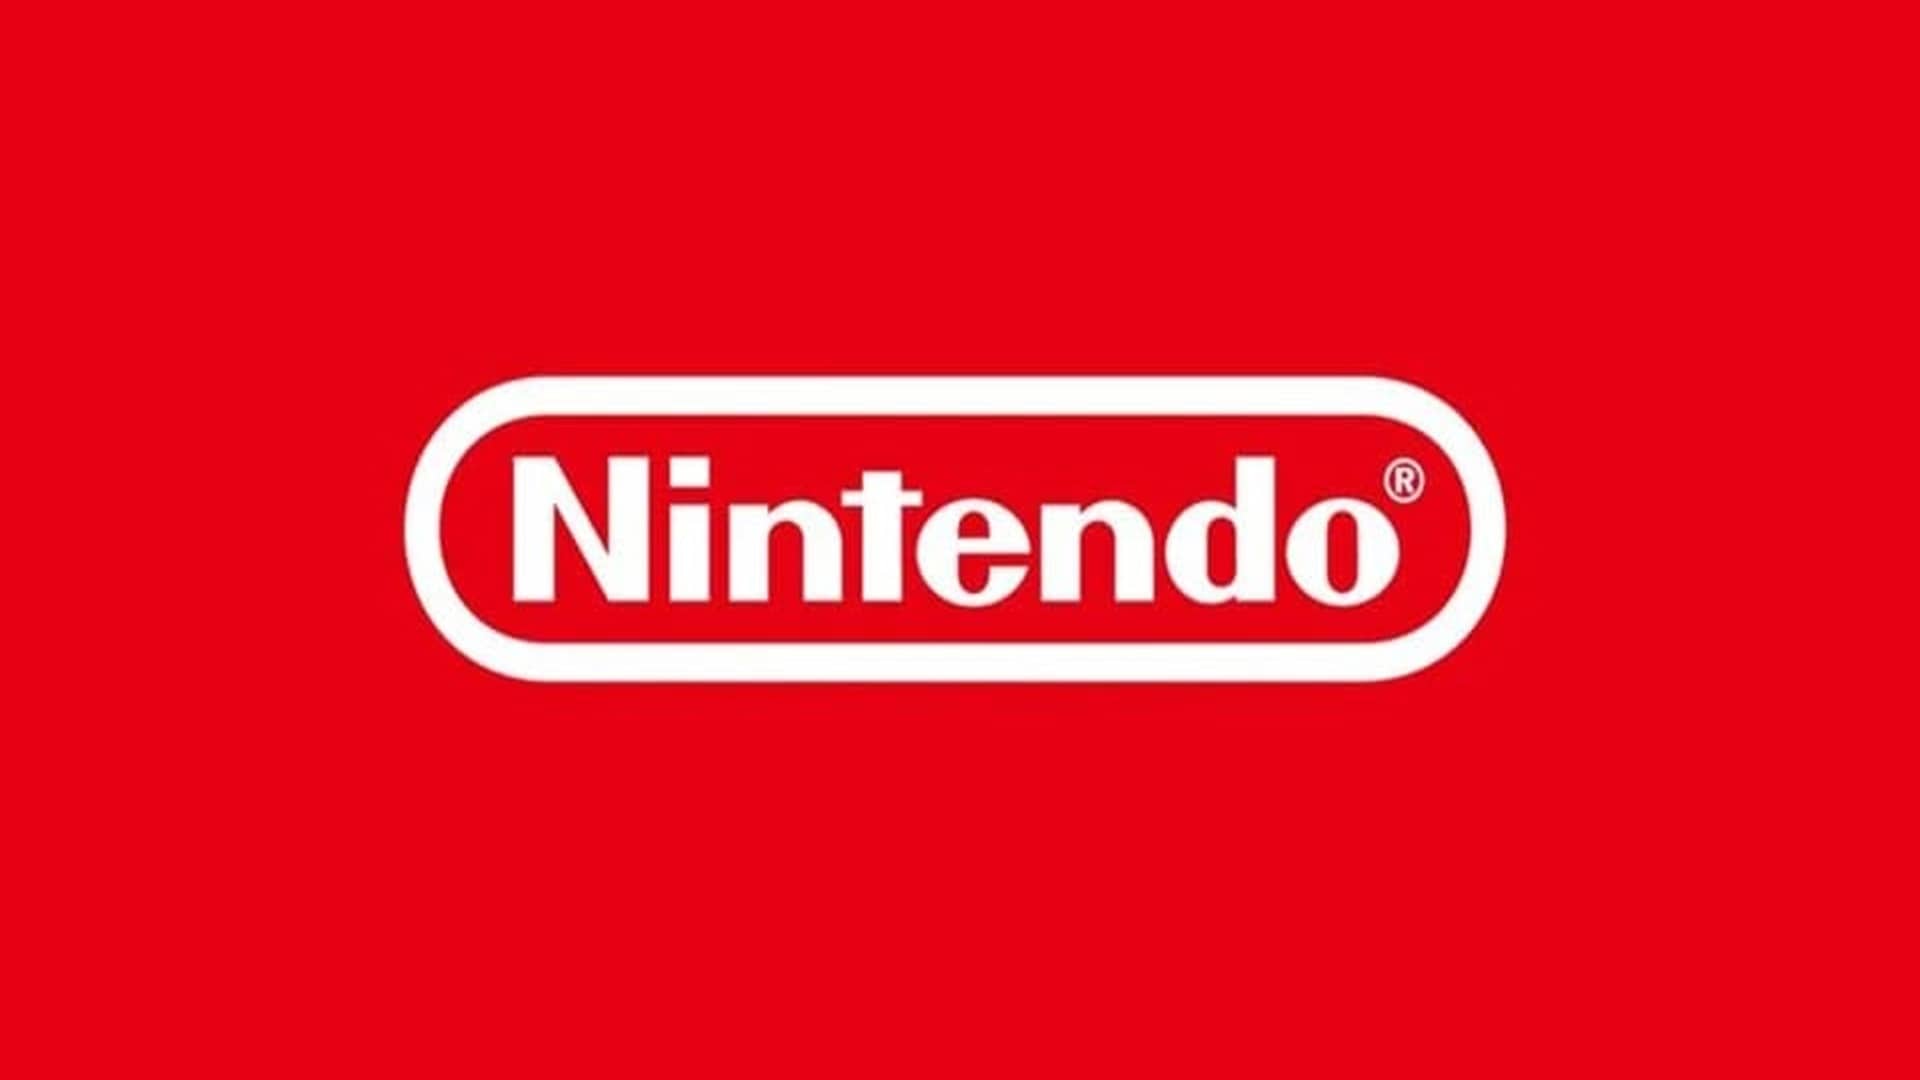 Arabia Saudita es ahora uno de los mayores accionistas de Nintendo, GamersRD